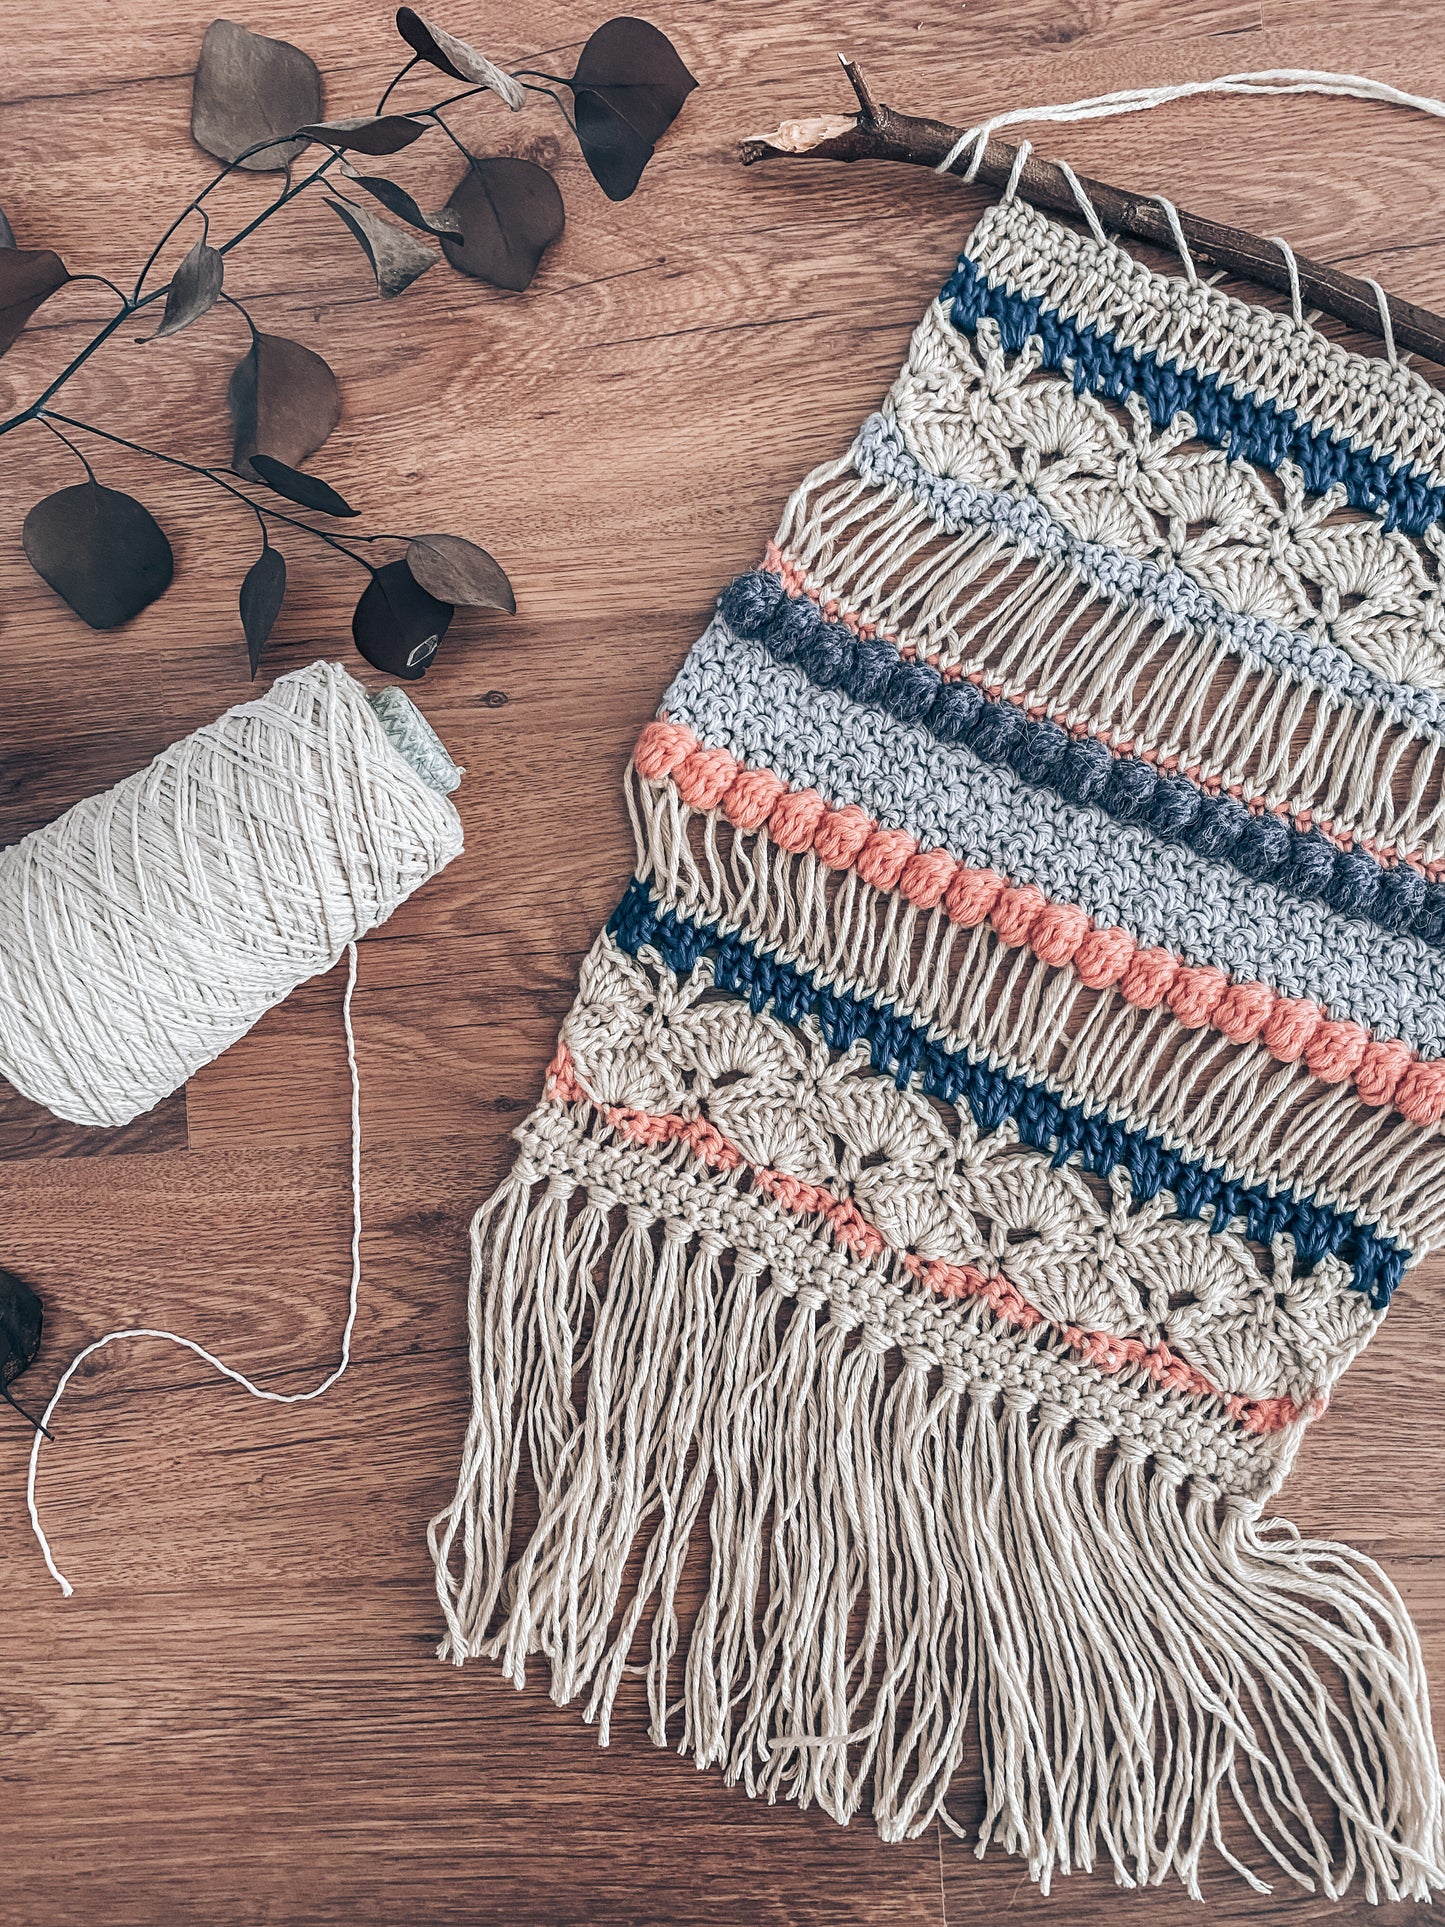 Woodstock wall hanging crochet pattern – Zein Crochet Designs